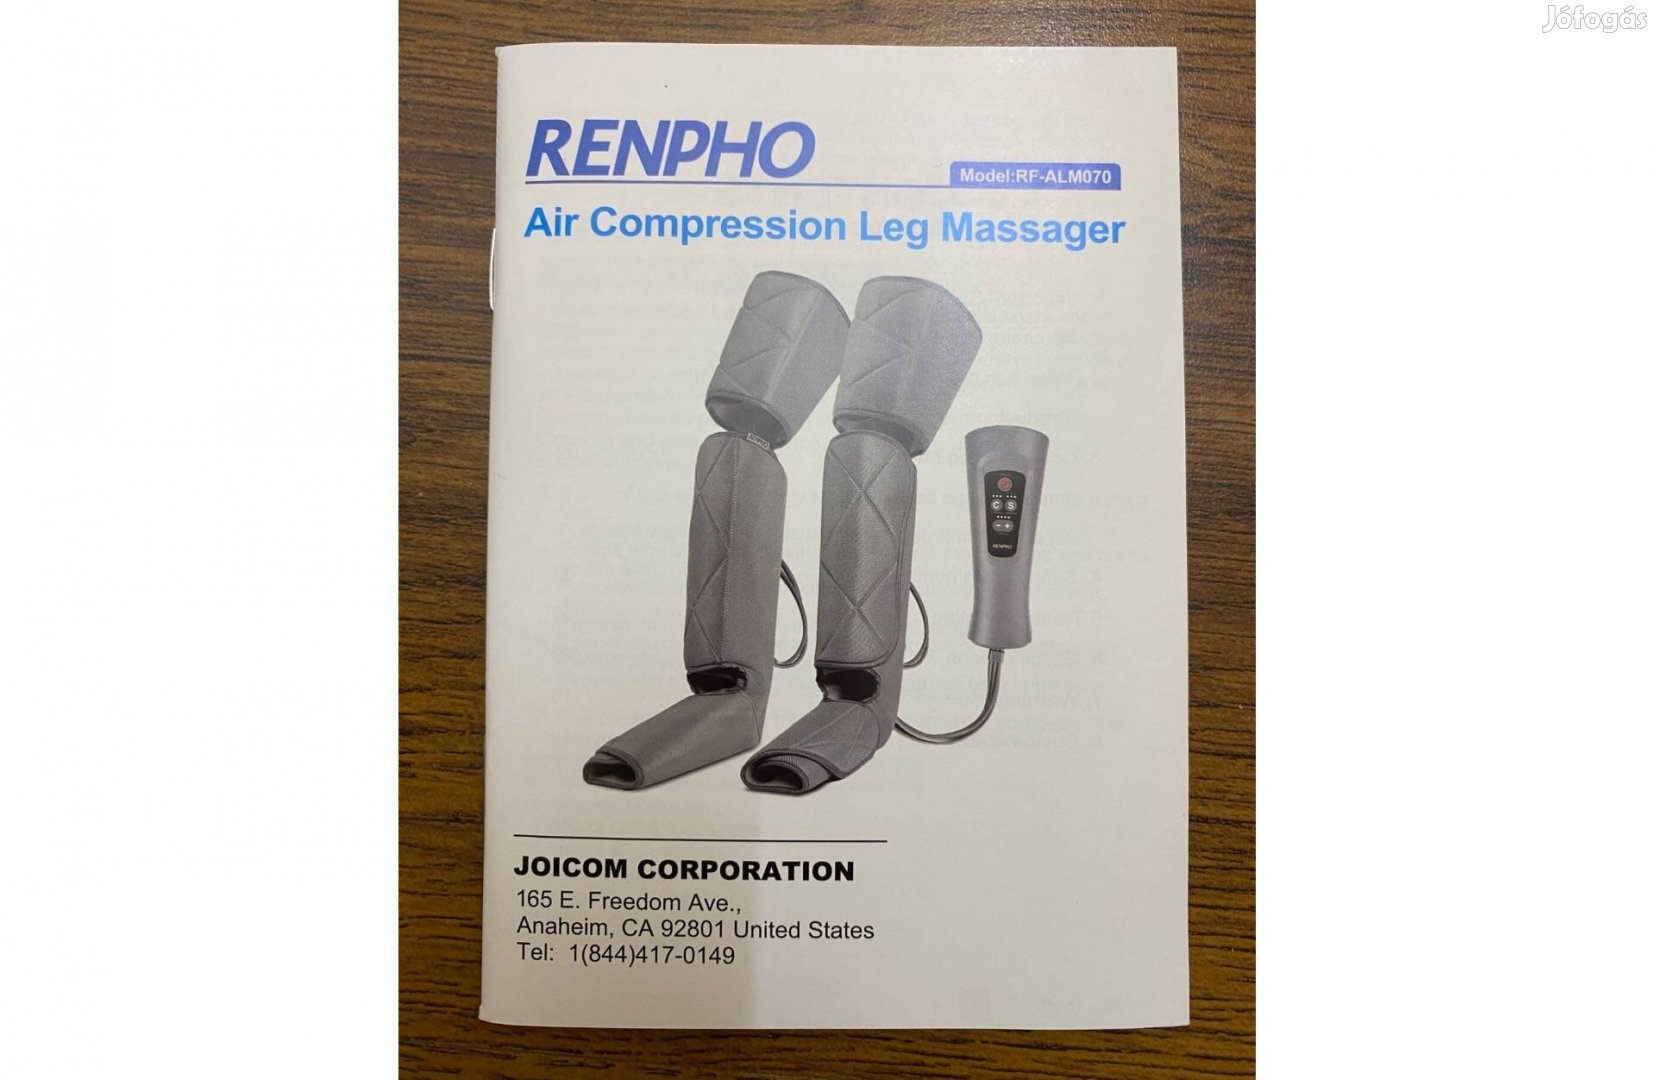 Renpho lég-kompressziós lábmasszírozó